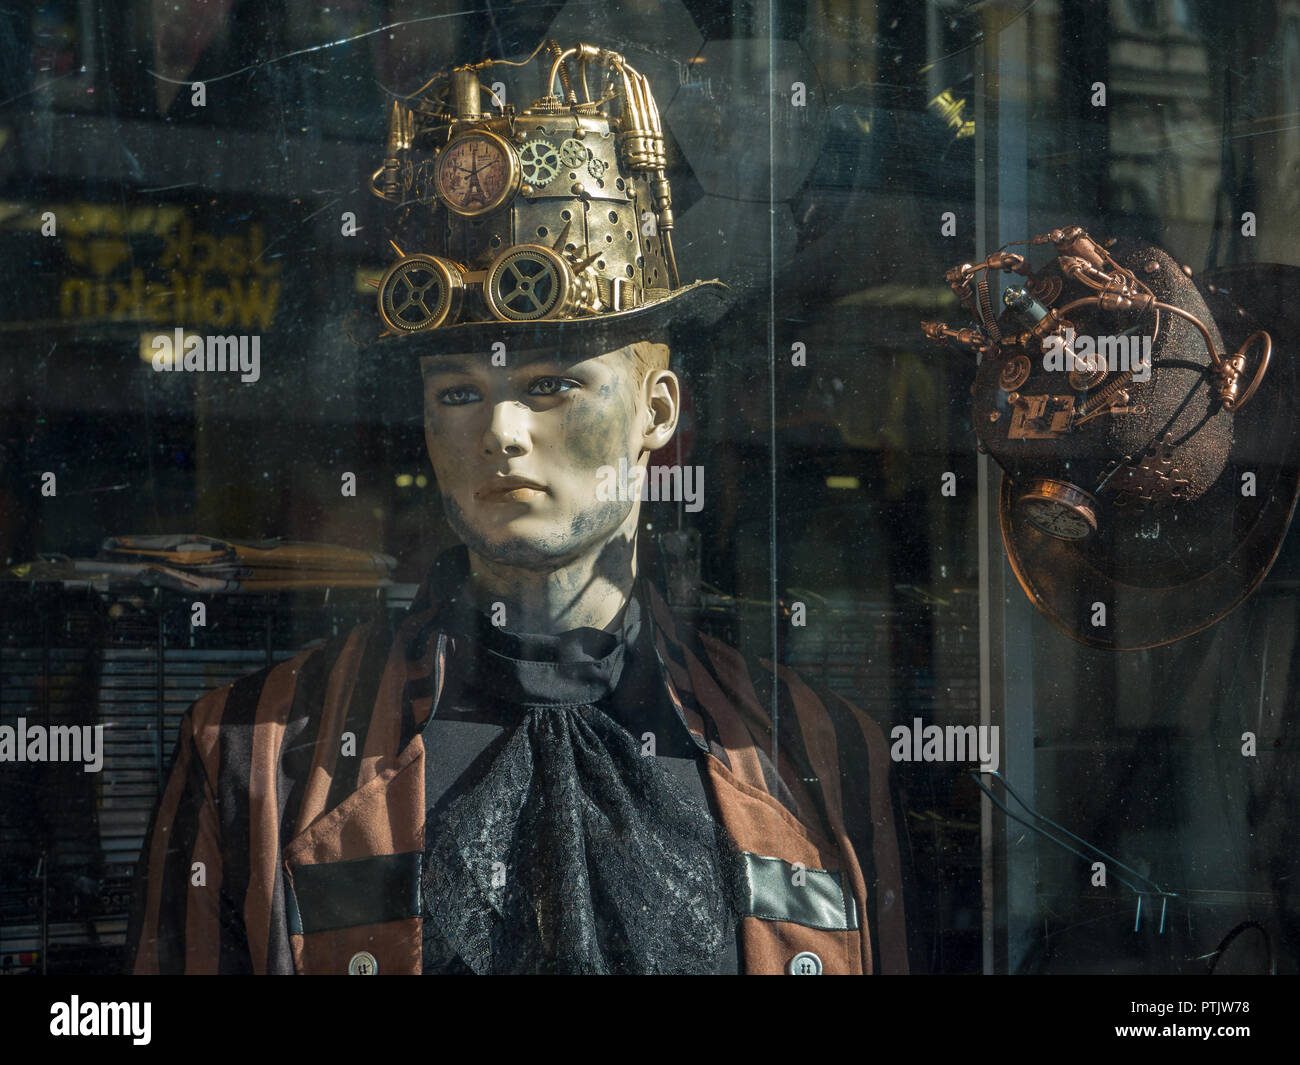 Attrappen maskiert für Halloween in einem Schaufenster, Aachen, Deutschland. Stockfoto